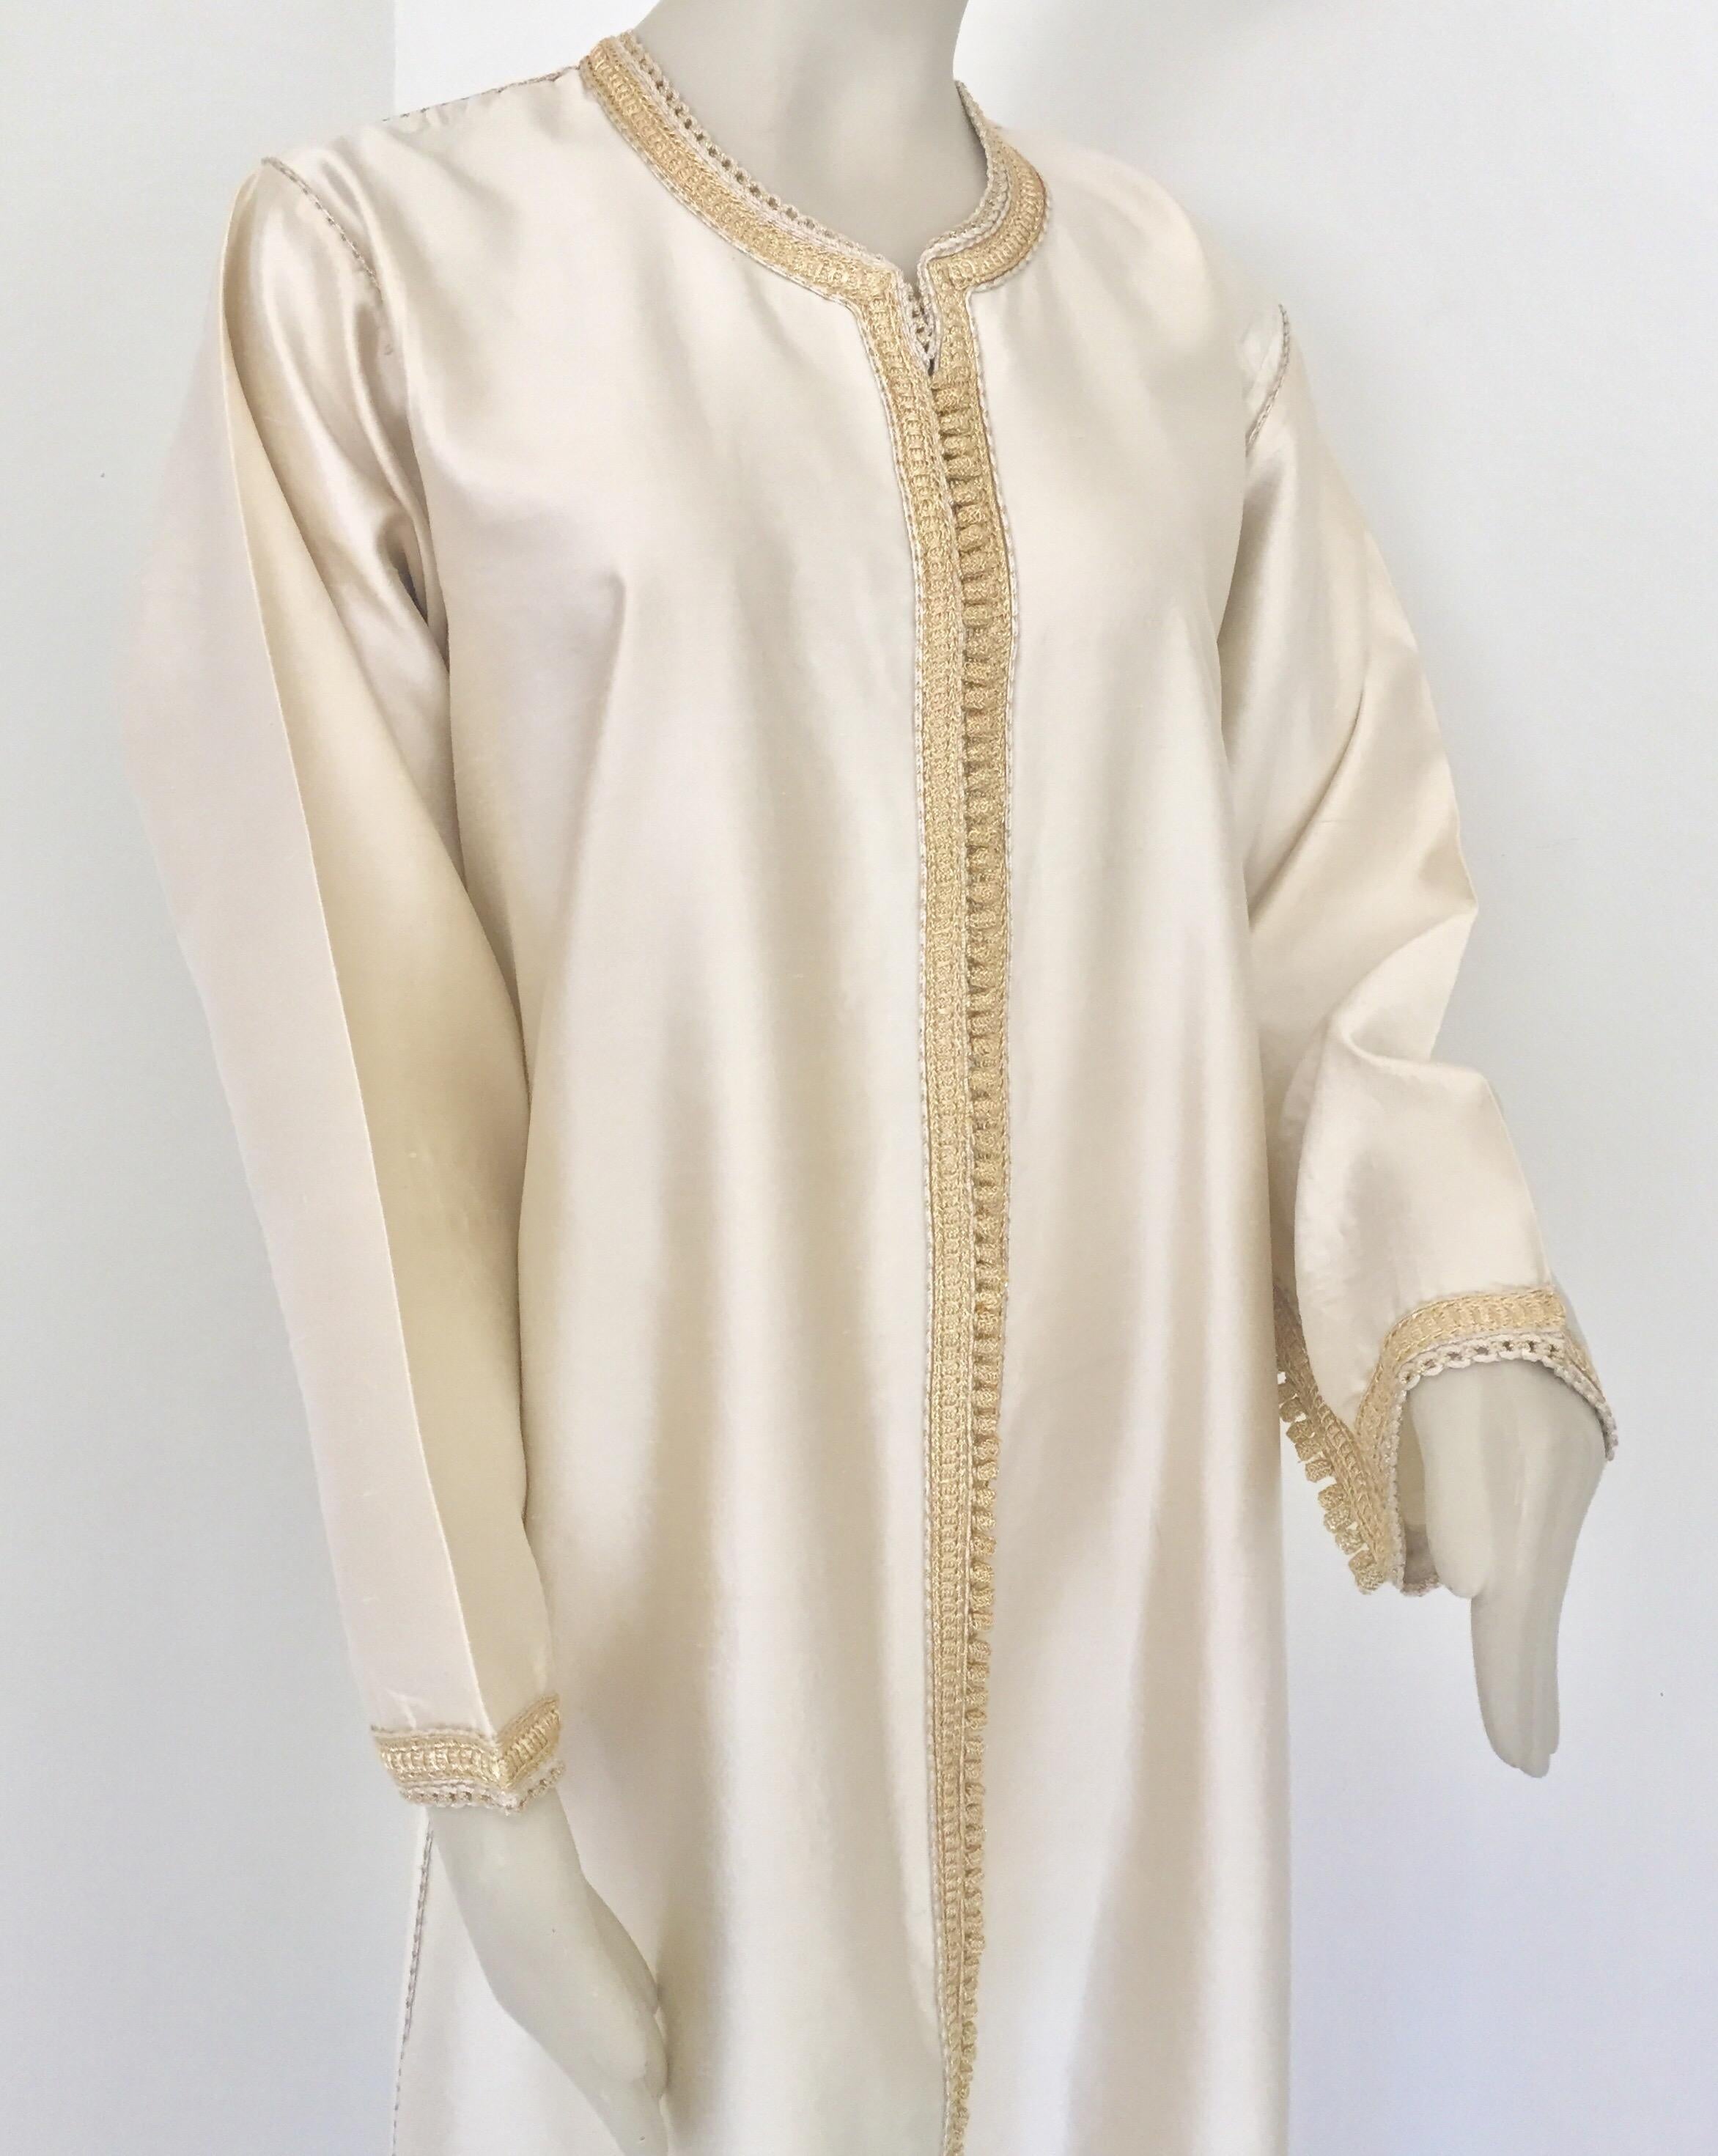 Élégante robe marocaine en caftan de luxe en soie.
Superbe tissu classique et élégant en soie Dupioni de couleur ivoire. Léger et facile à porter à la maison ou à une fête.
Ce caftan à la robe longue et longue est brodé et embelli entièrement à la